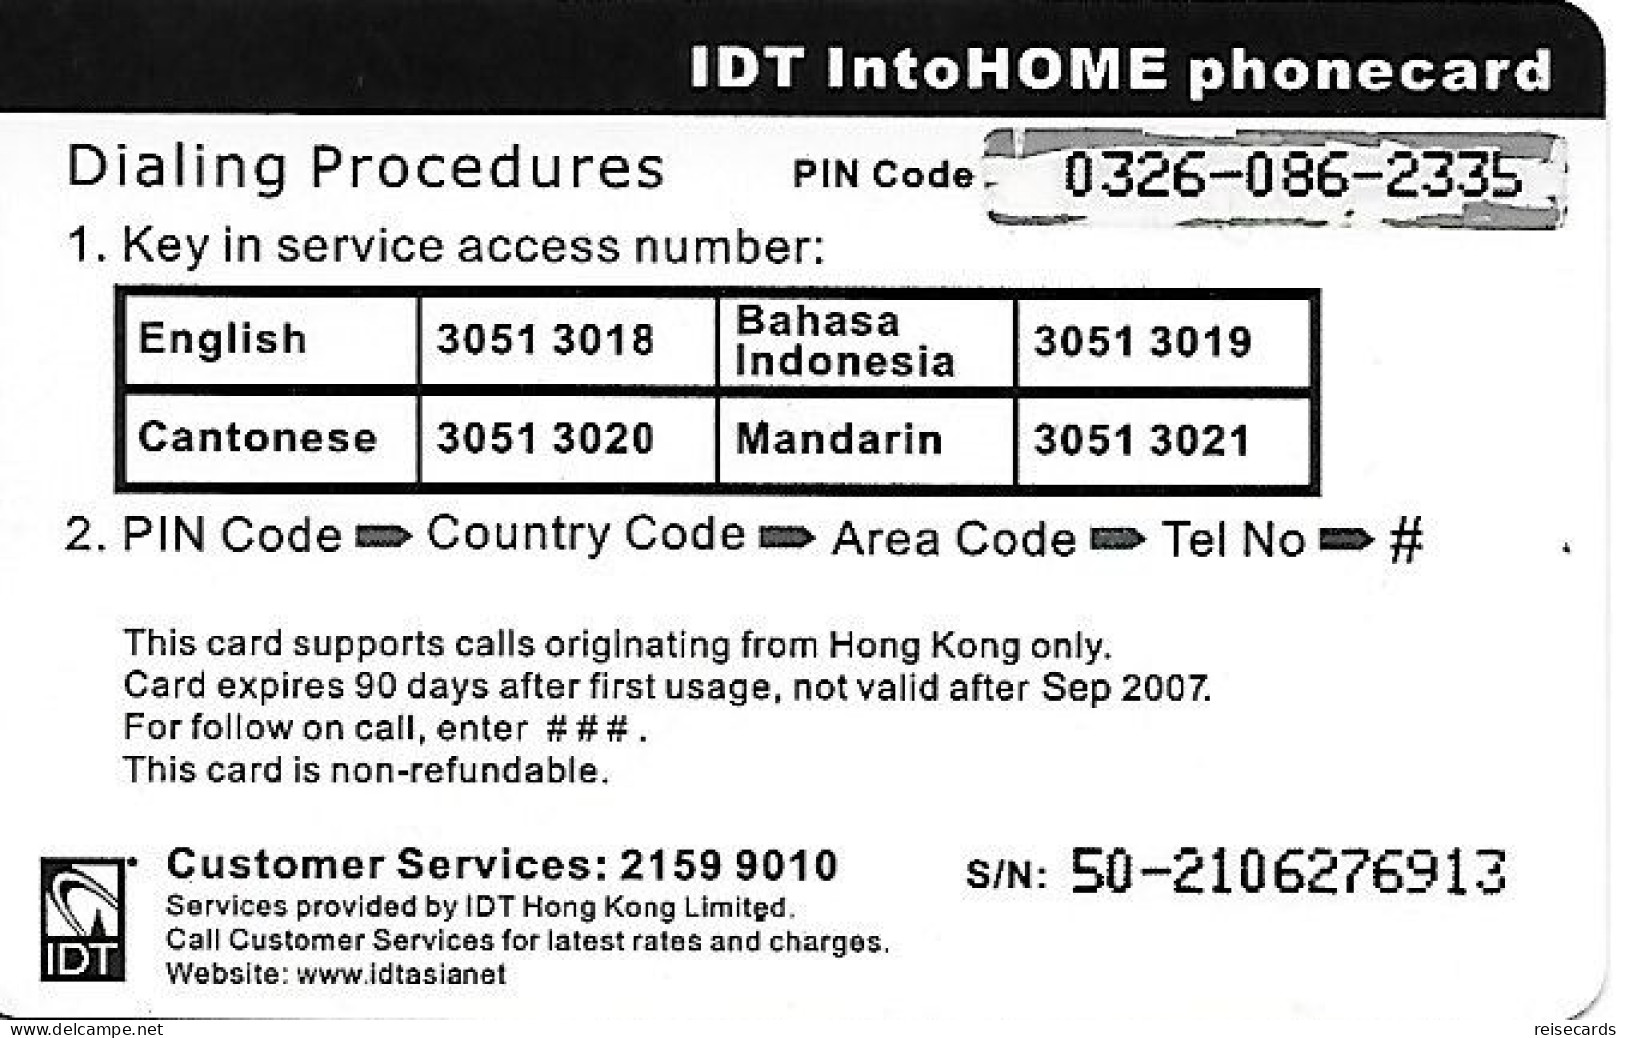 Hongkong: Prepaid IDT - Home 09.07 - Hong Kong